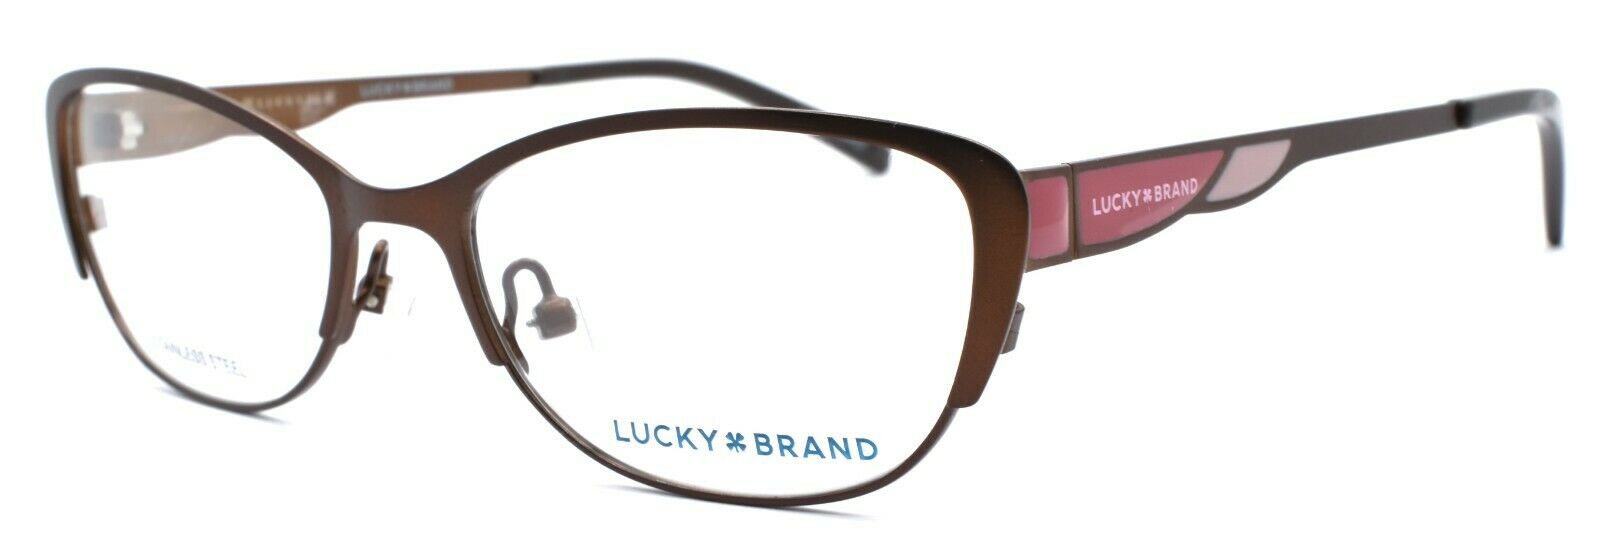 1-LUCKY BRAND D704 Kids Girls Eyeglasses Frames 47-15-130 Brown + CASE-751286282221-IKSpecs